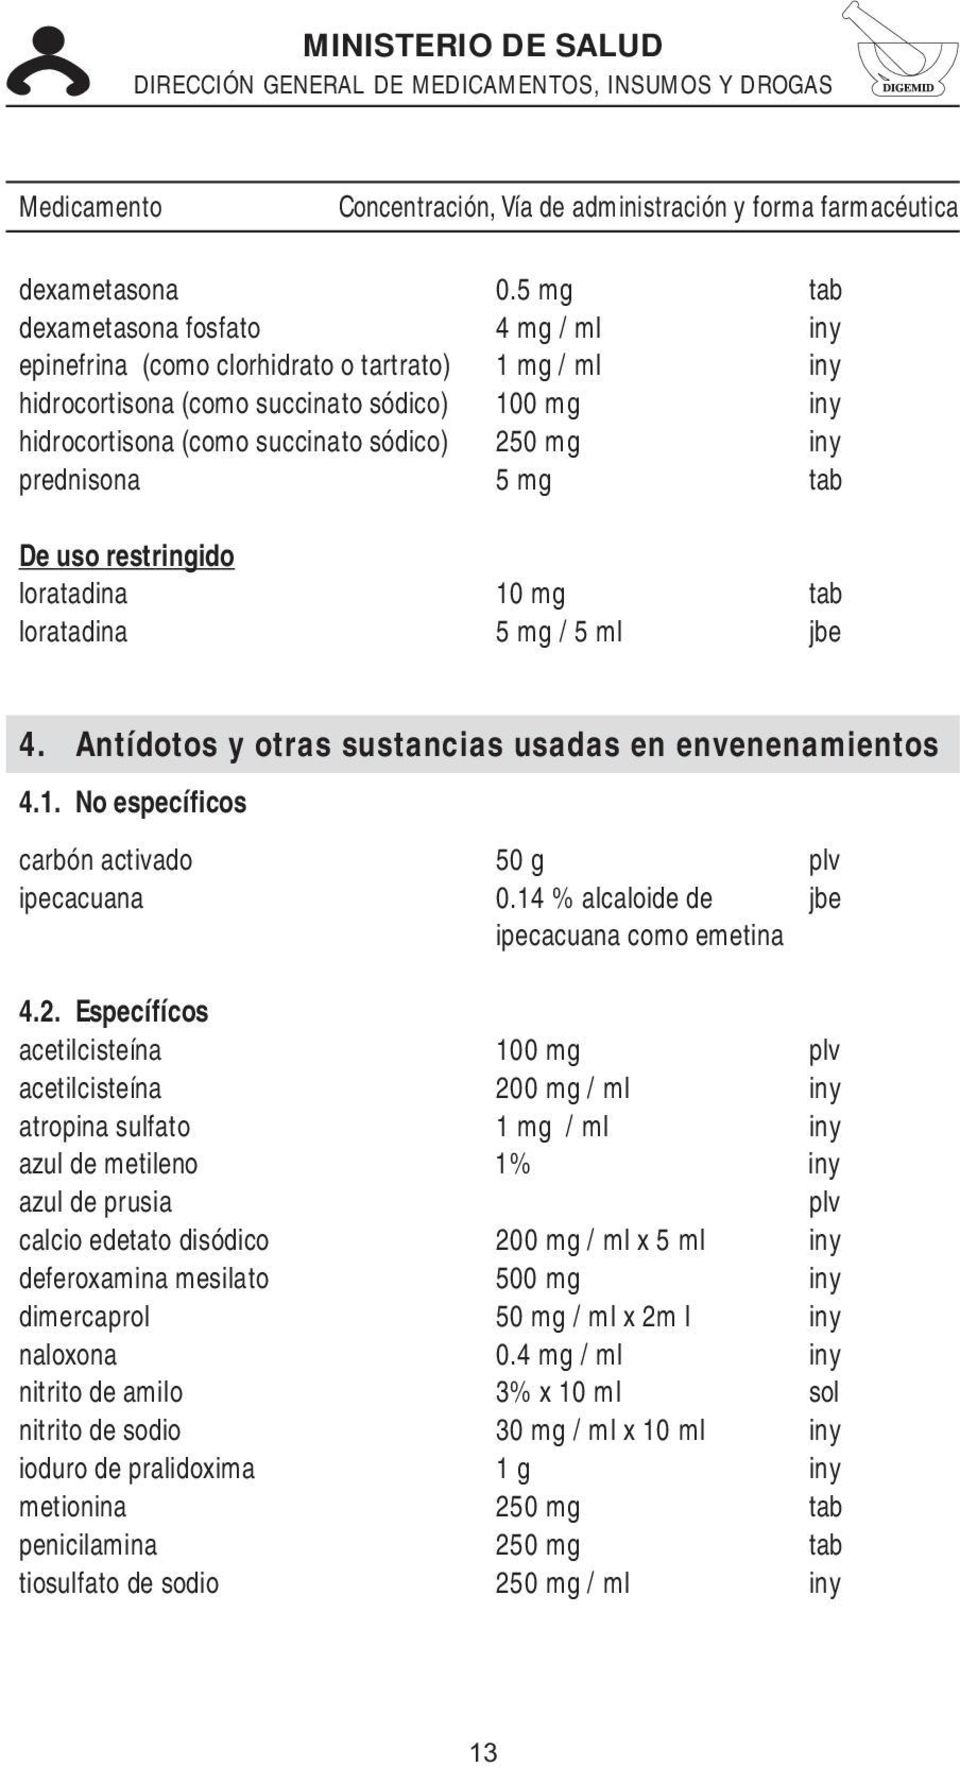 prednisona 5 mg tab loratadina 10 mg tab loratadina 5 mg / 5 ml jbe 4. Antídotos y otras sustancias usadas en envenenamientos 4.1. No específicos carbón activado 50 g plv ipecacuana 0.